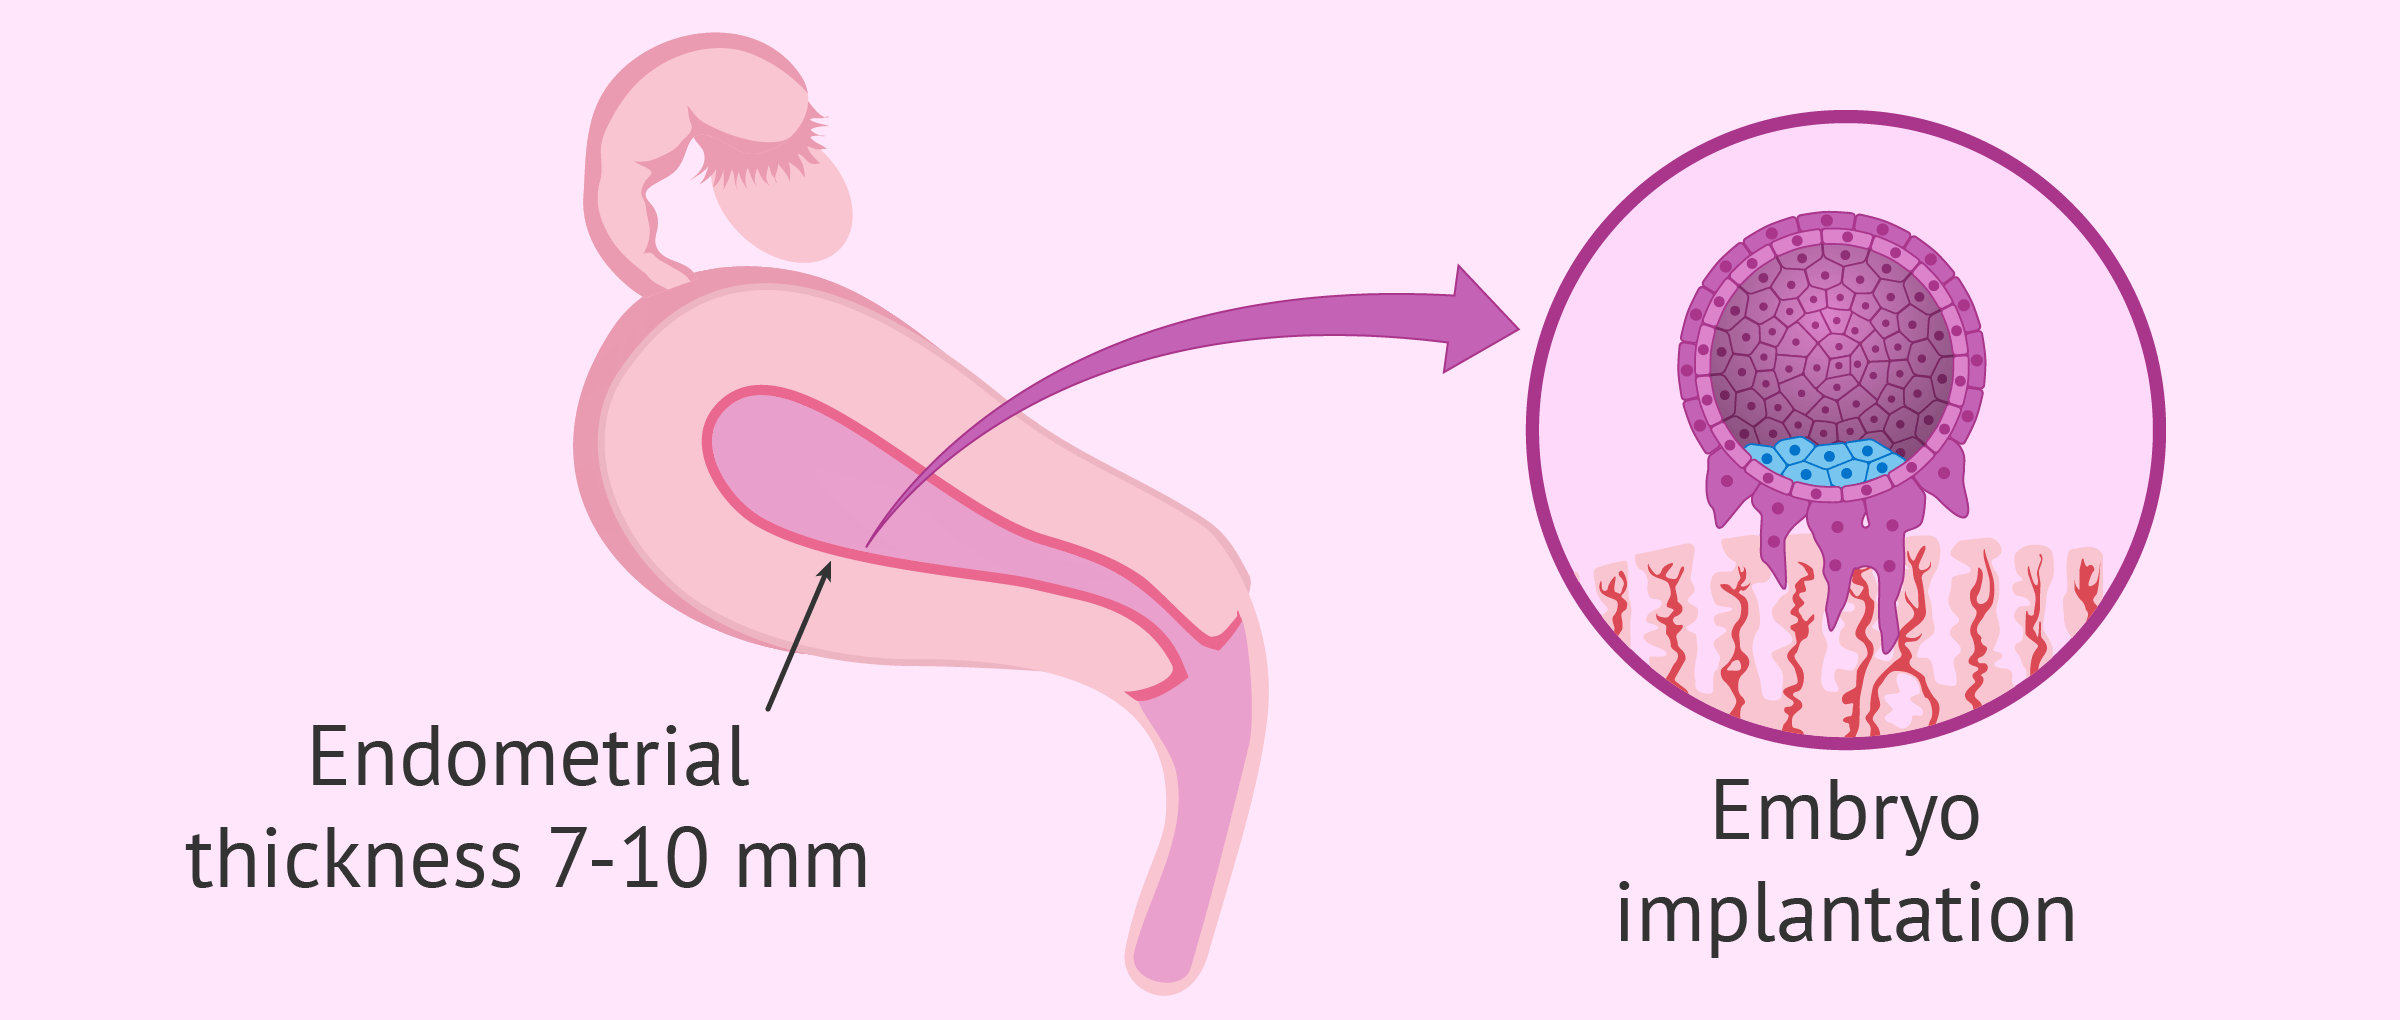 Implantacion embrion fiv